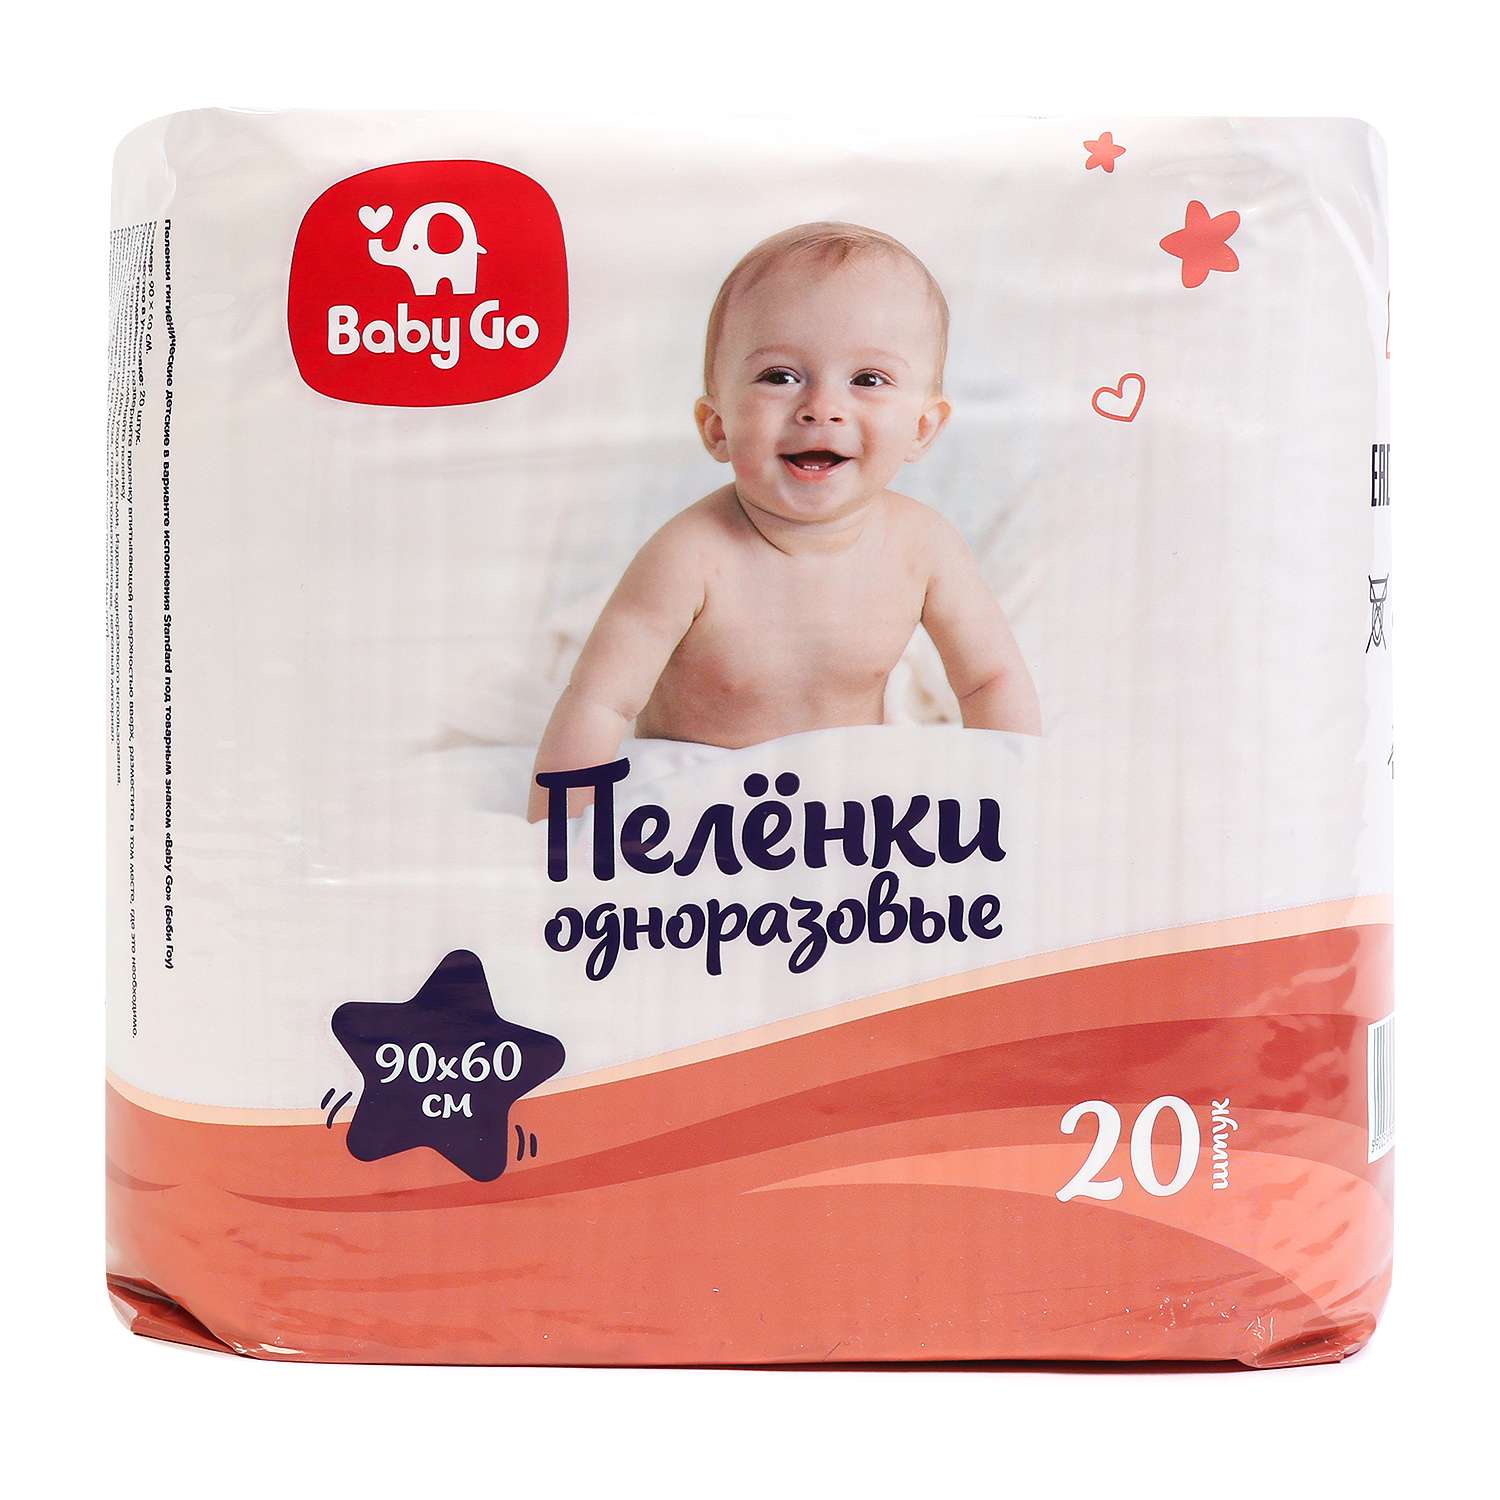 Пеленки BabyGo одноразовые 90*60 20шт - фото 1